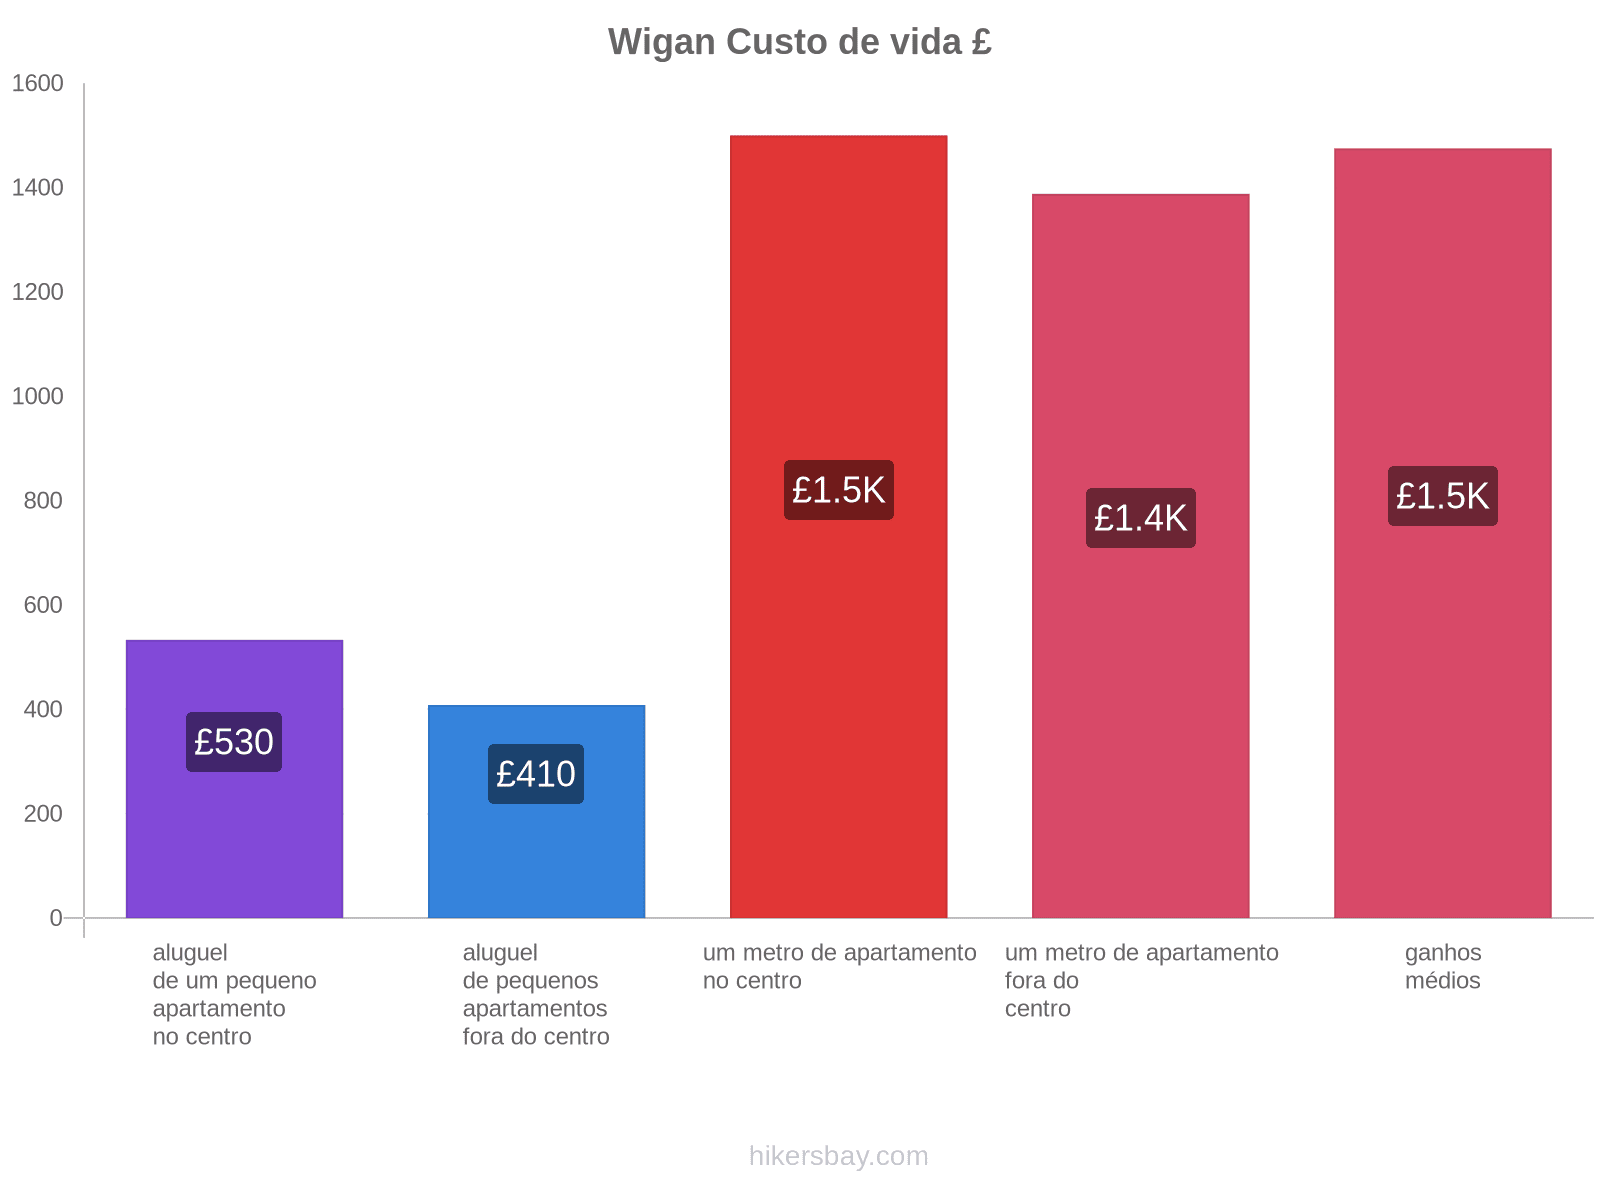 Wigan custo de vida hikersbay.com